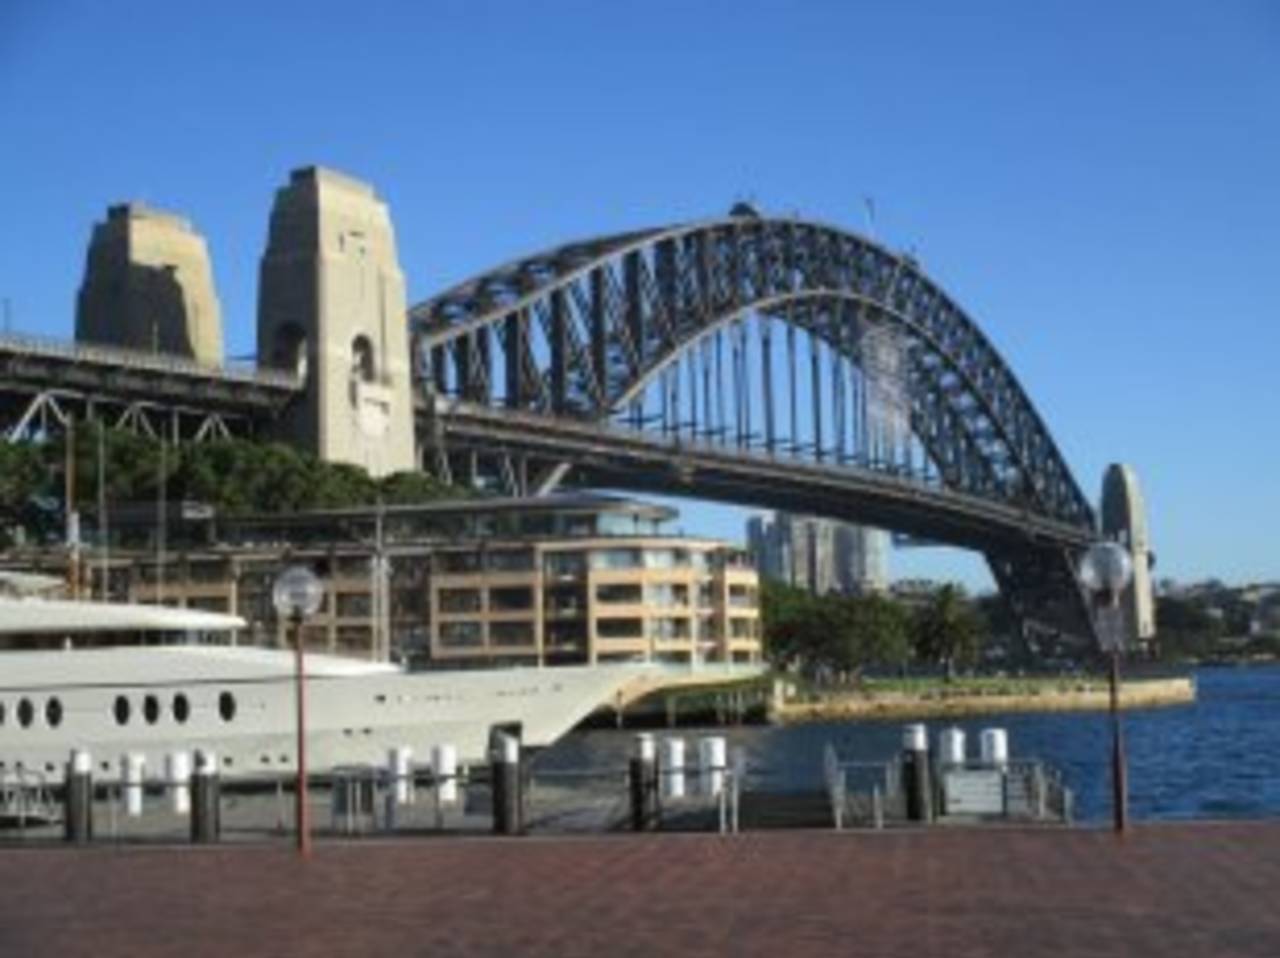 A view of the Harbour Bridge, Sydney